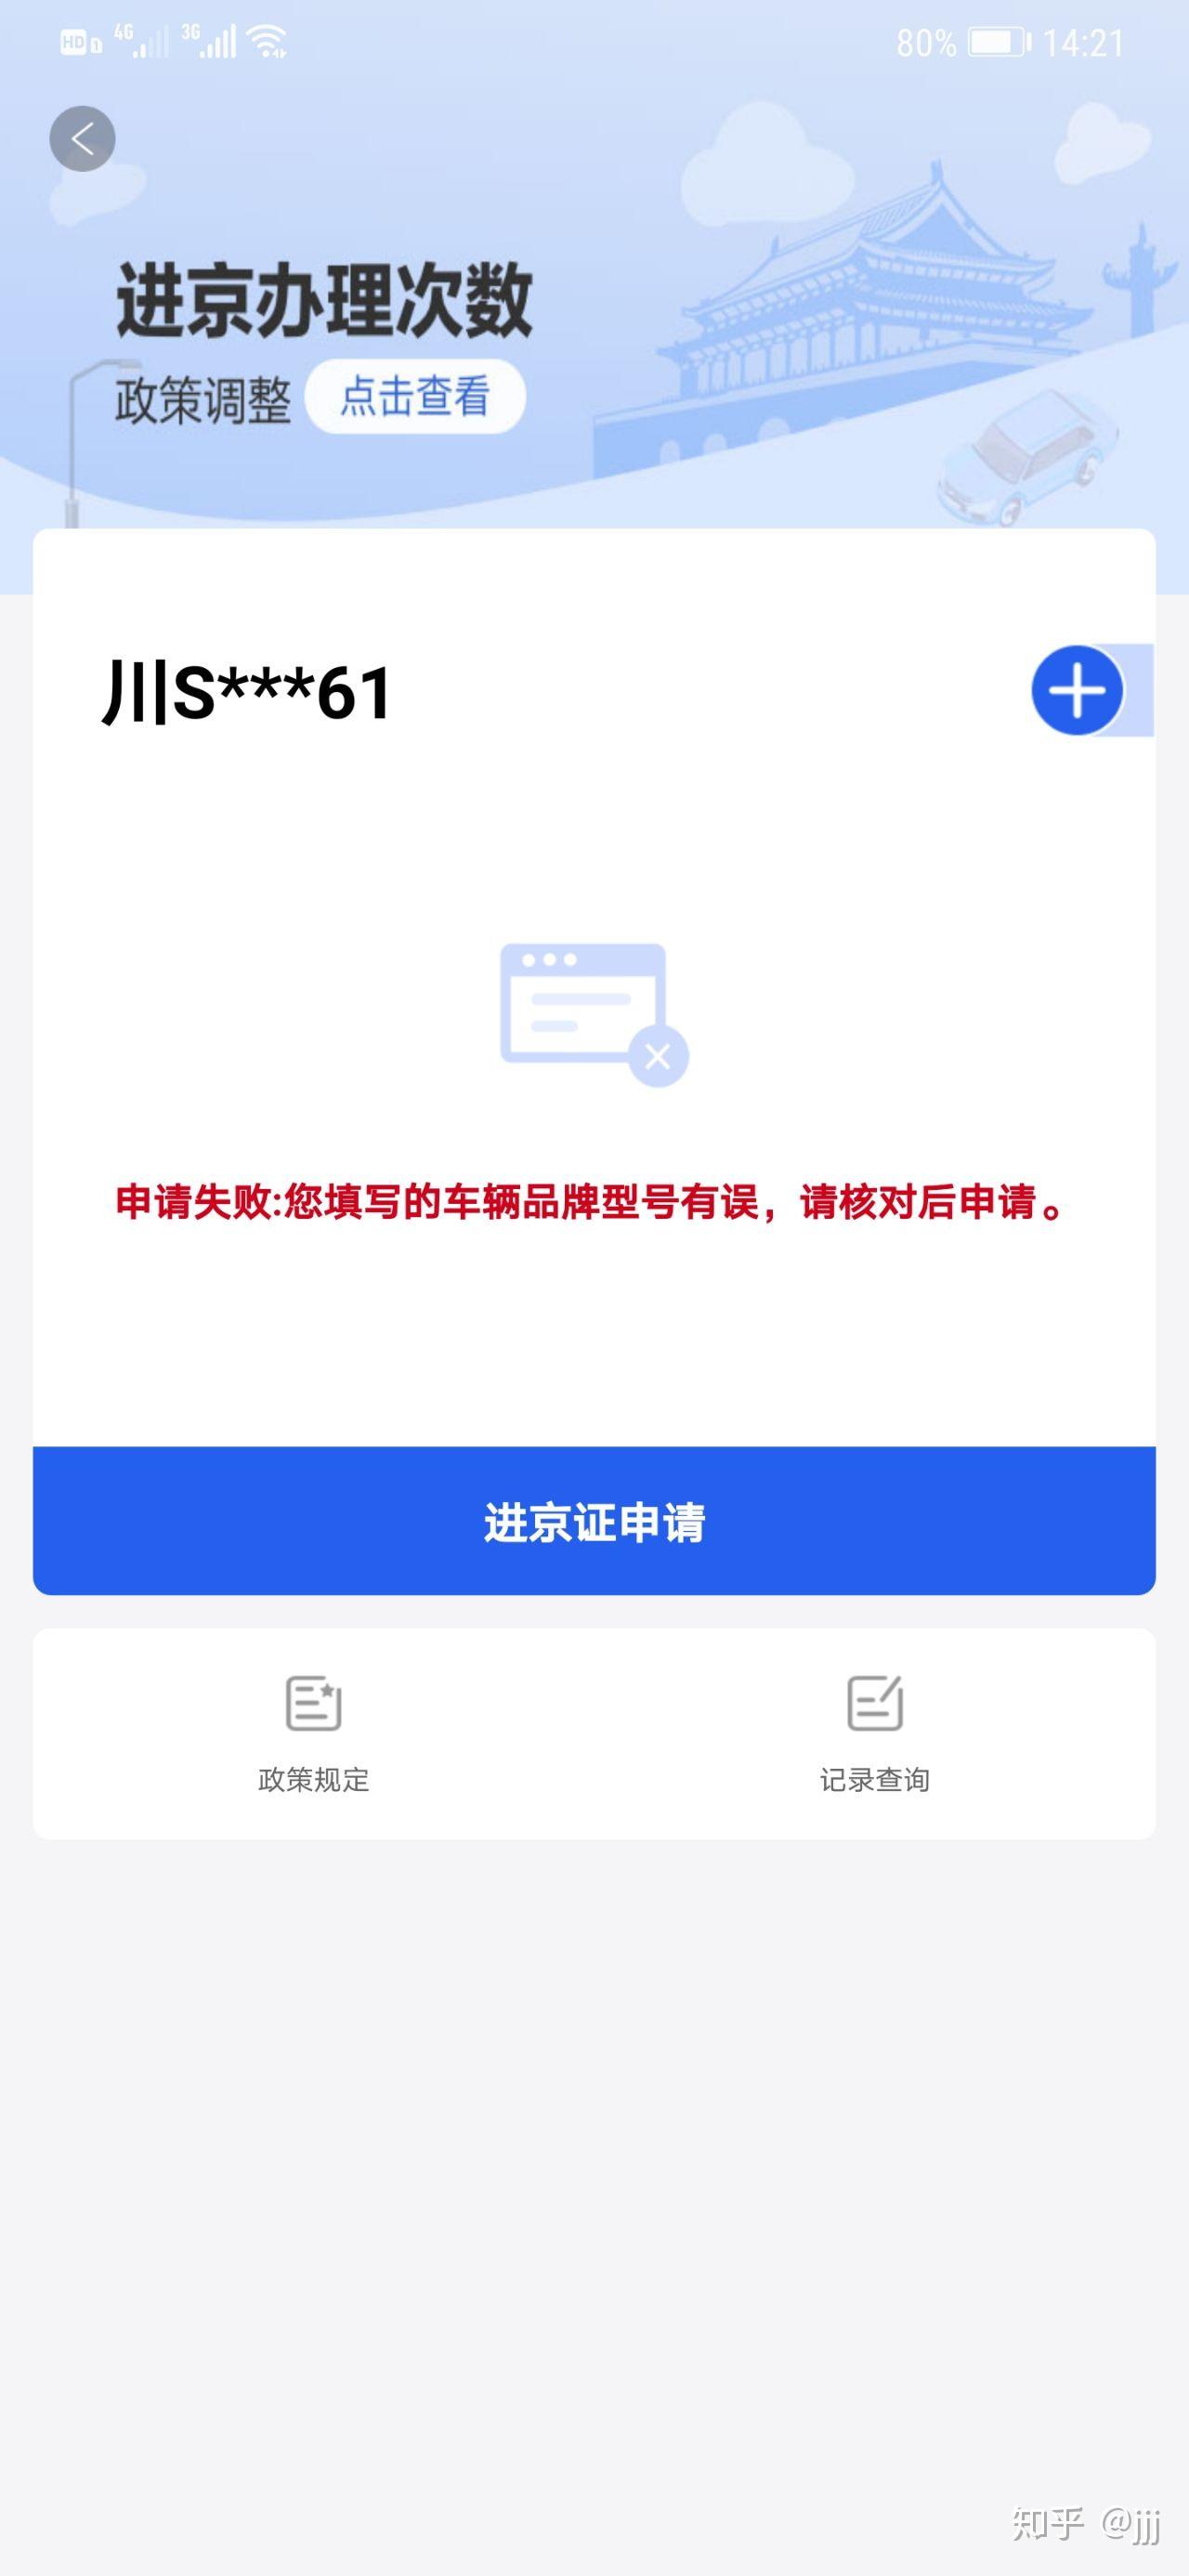 《天生不对》曝海报揭秘周渝民薛凯琪面相玄机-新闻100